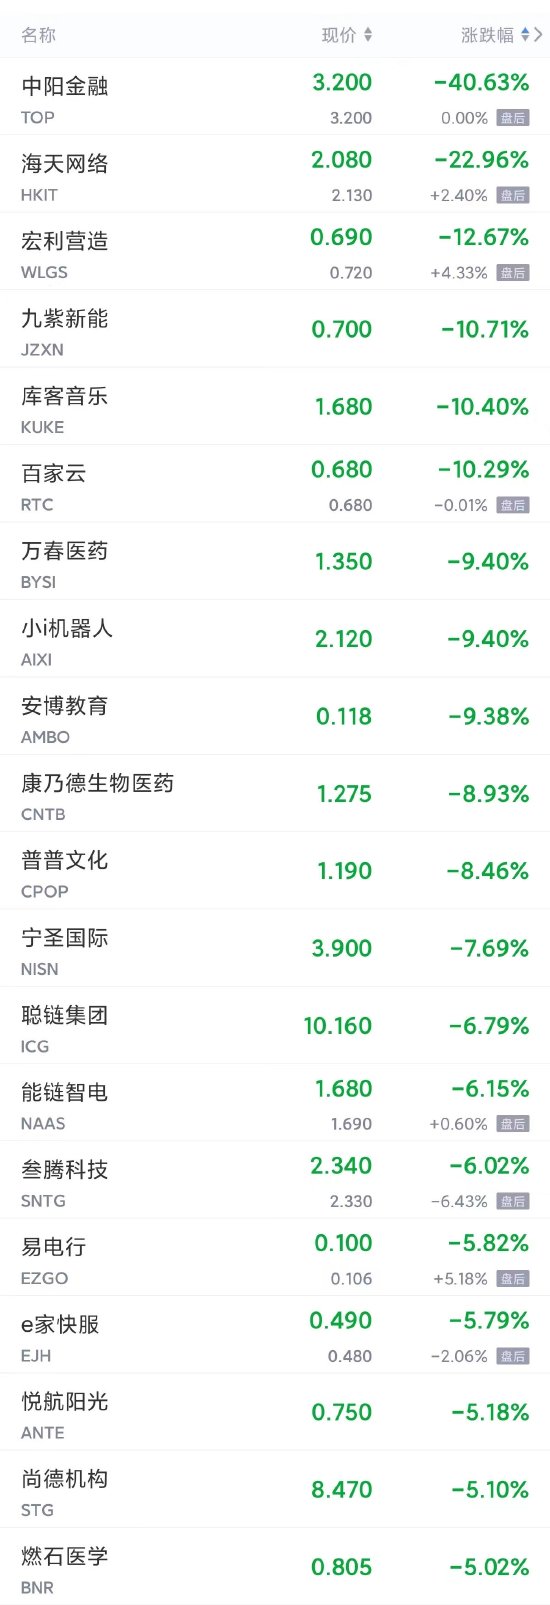 周一热门中概股多数上涨 微博涨超4%，小鹏、拼多多、B站涨超3%，蔚来、京东涨超2%